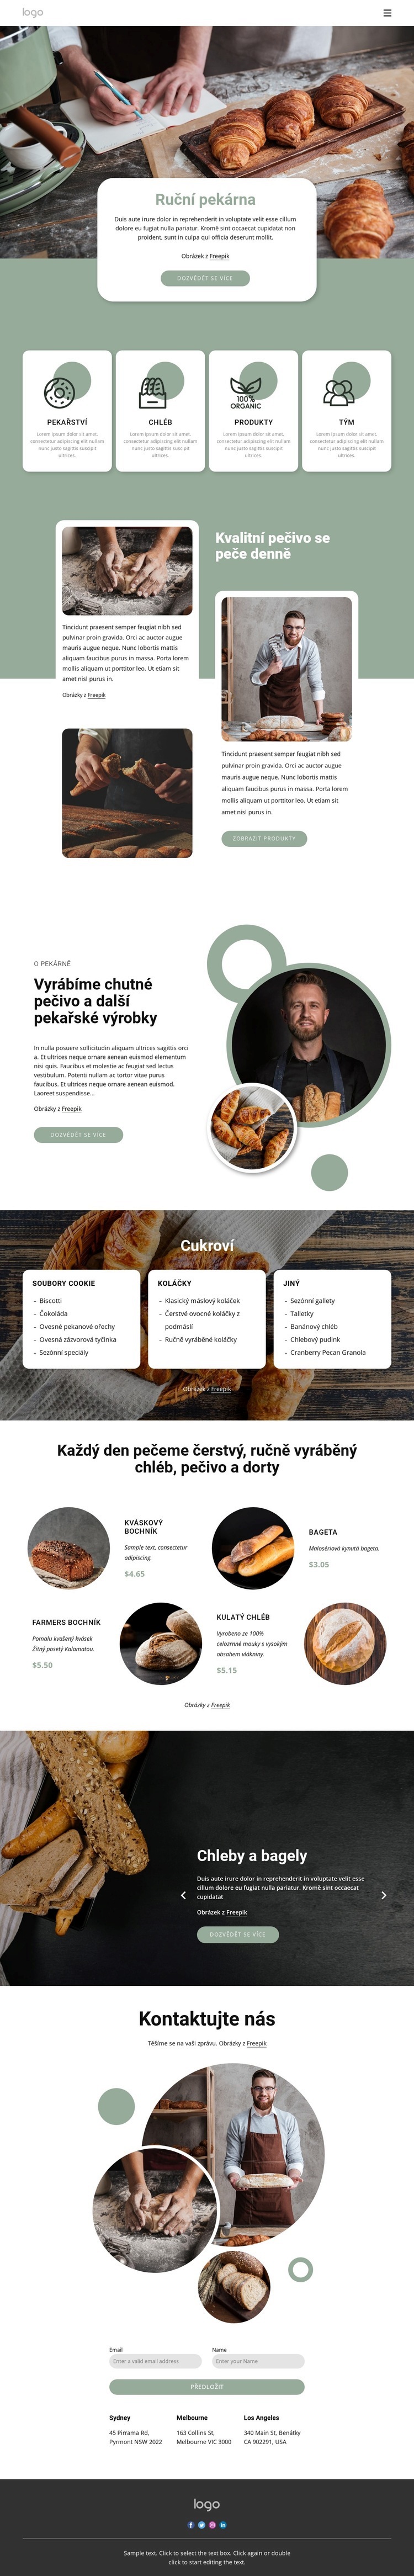 Ruční pekárna Webový design